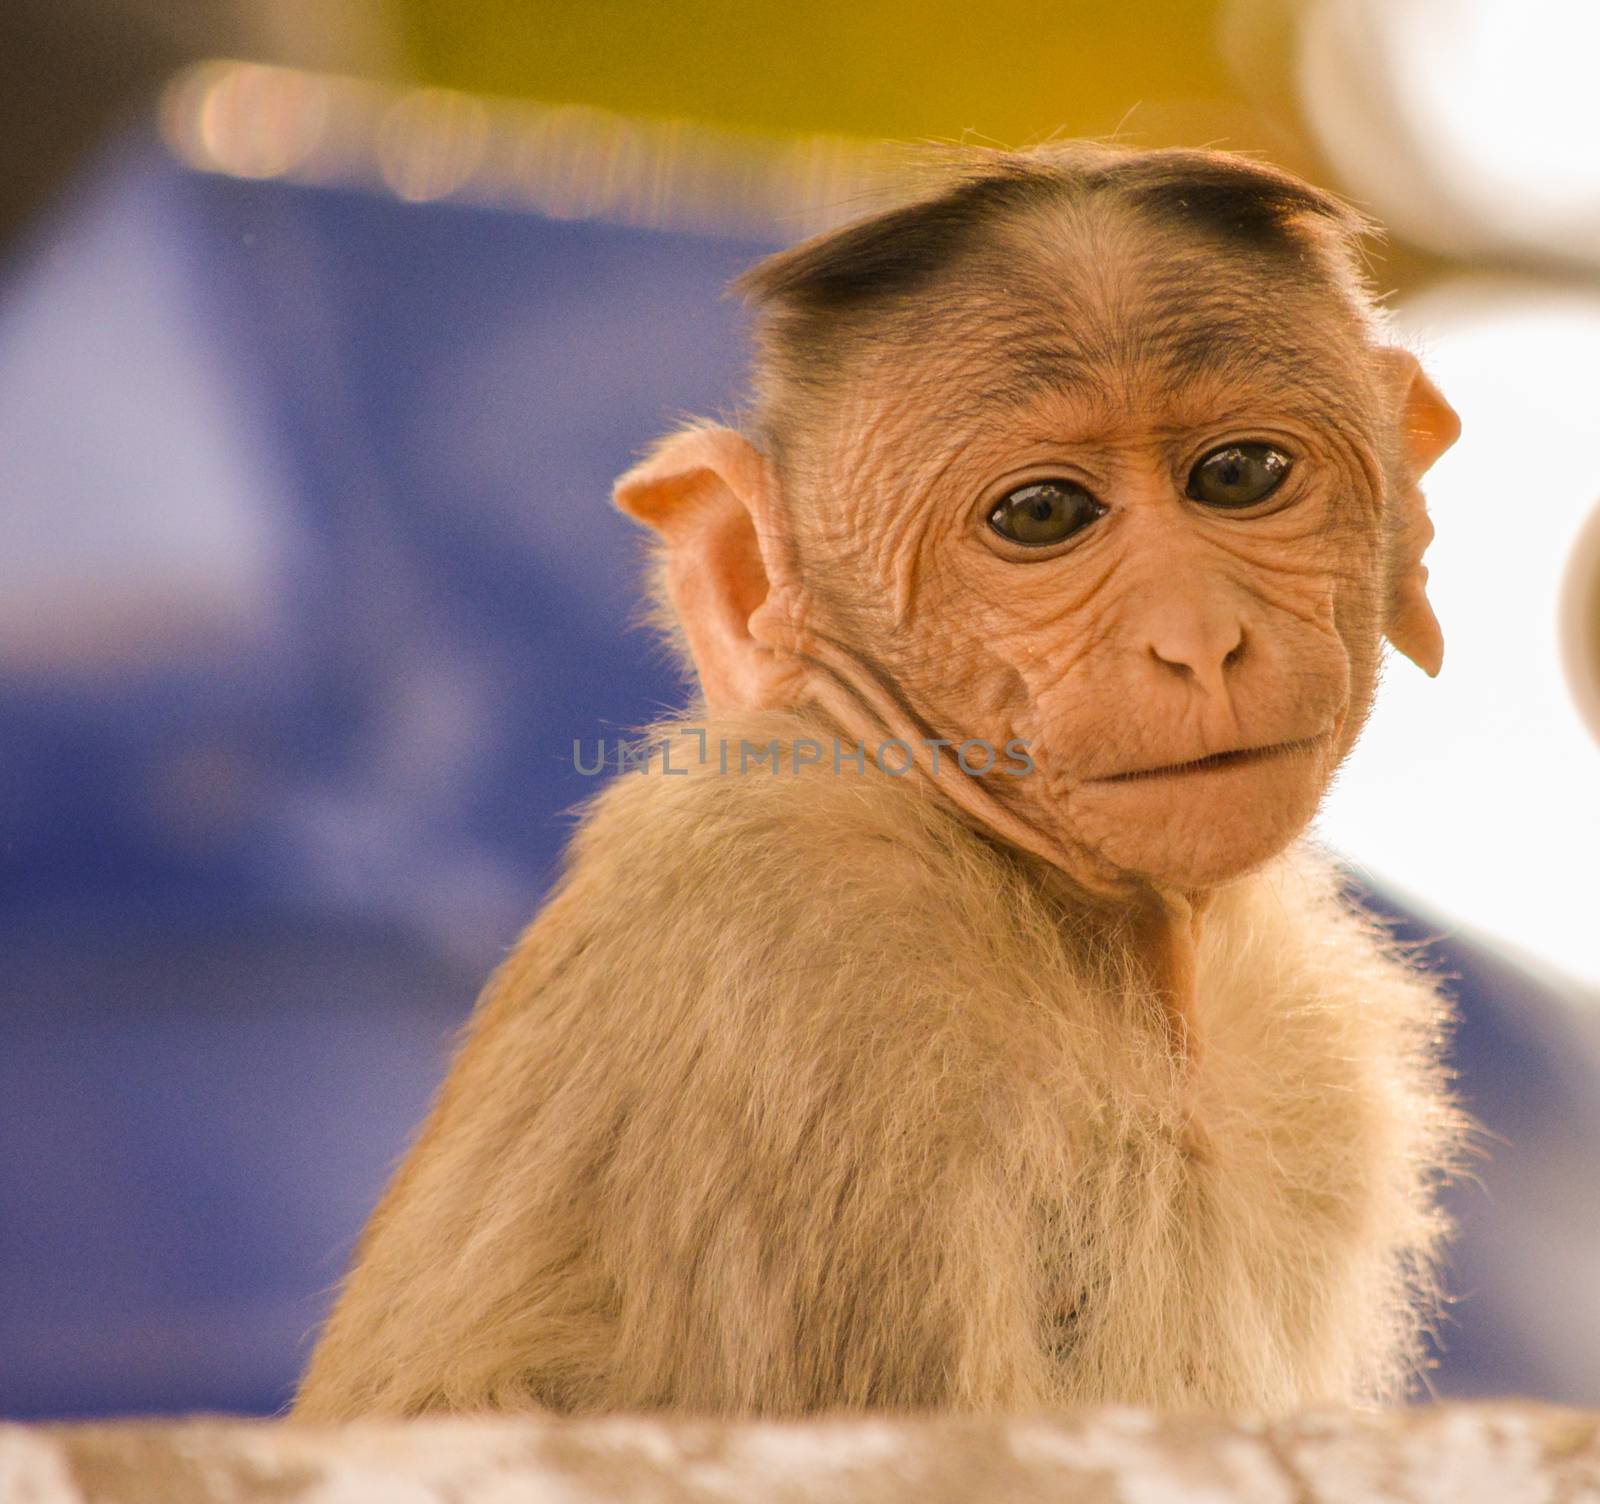 portrait of bonnet macaque monkey.